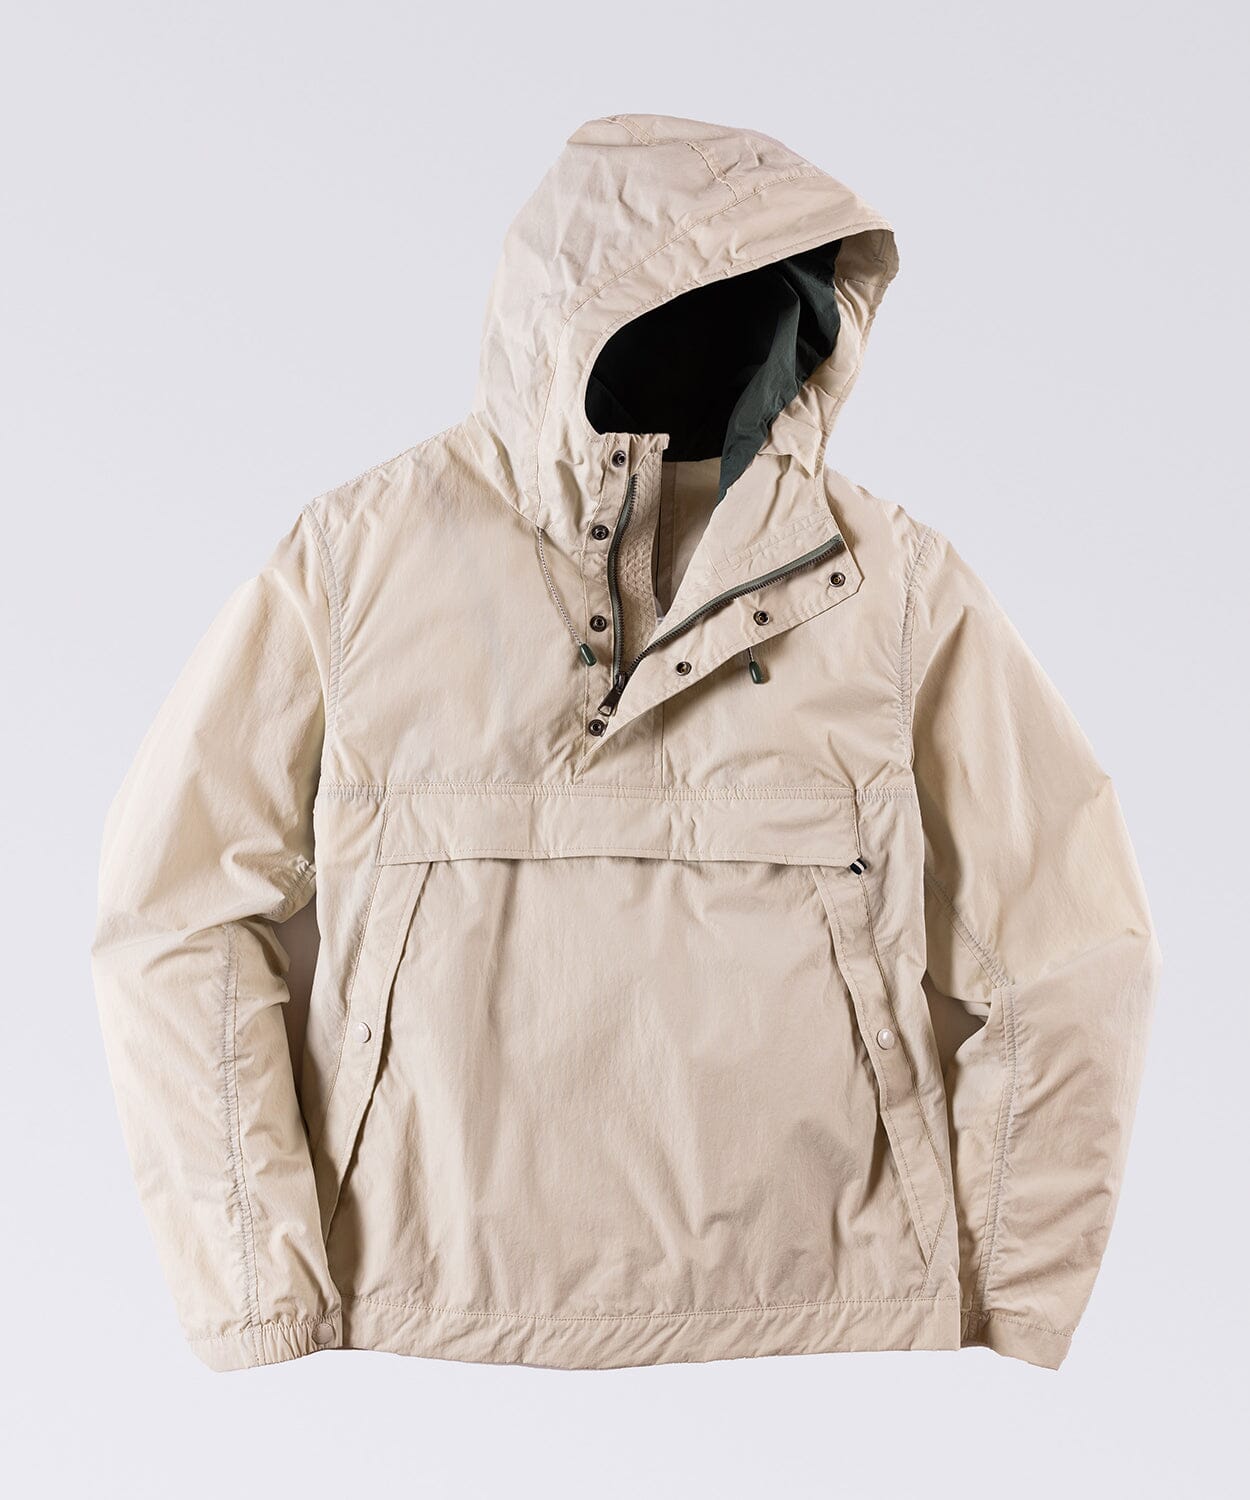 mens anorak jacket by oobe brand